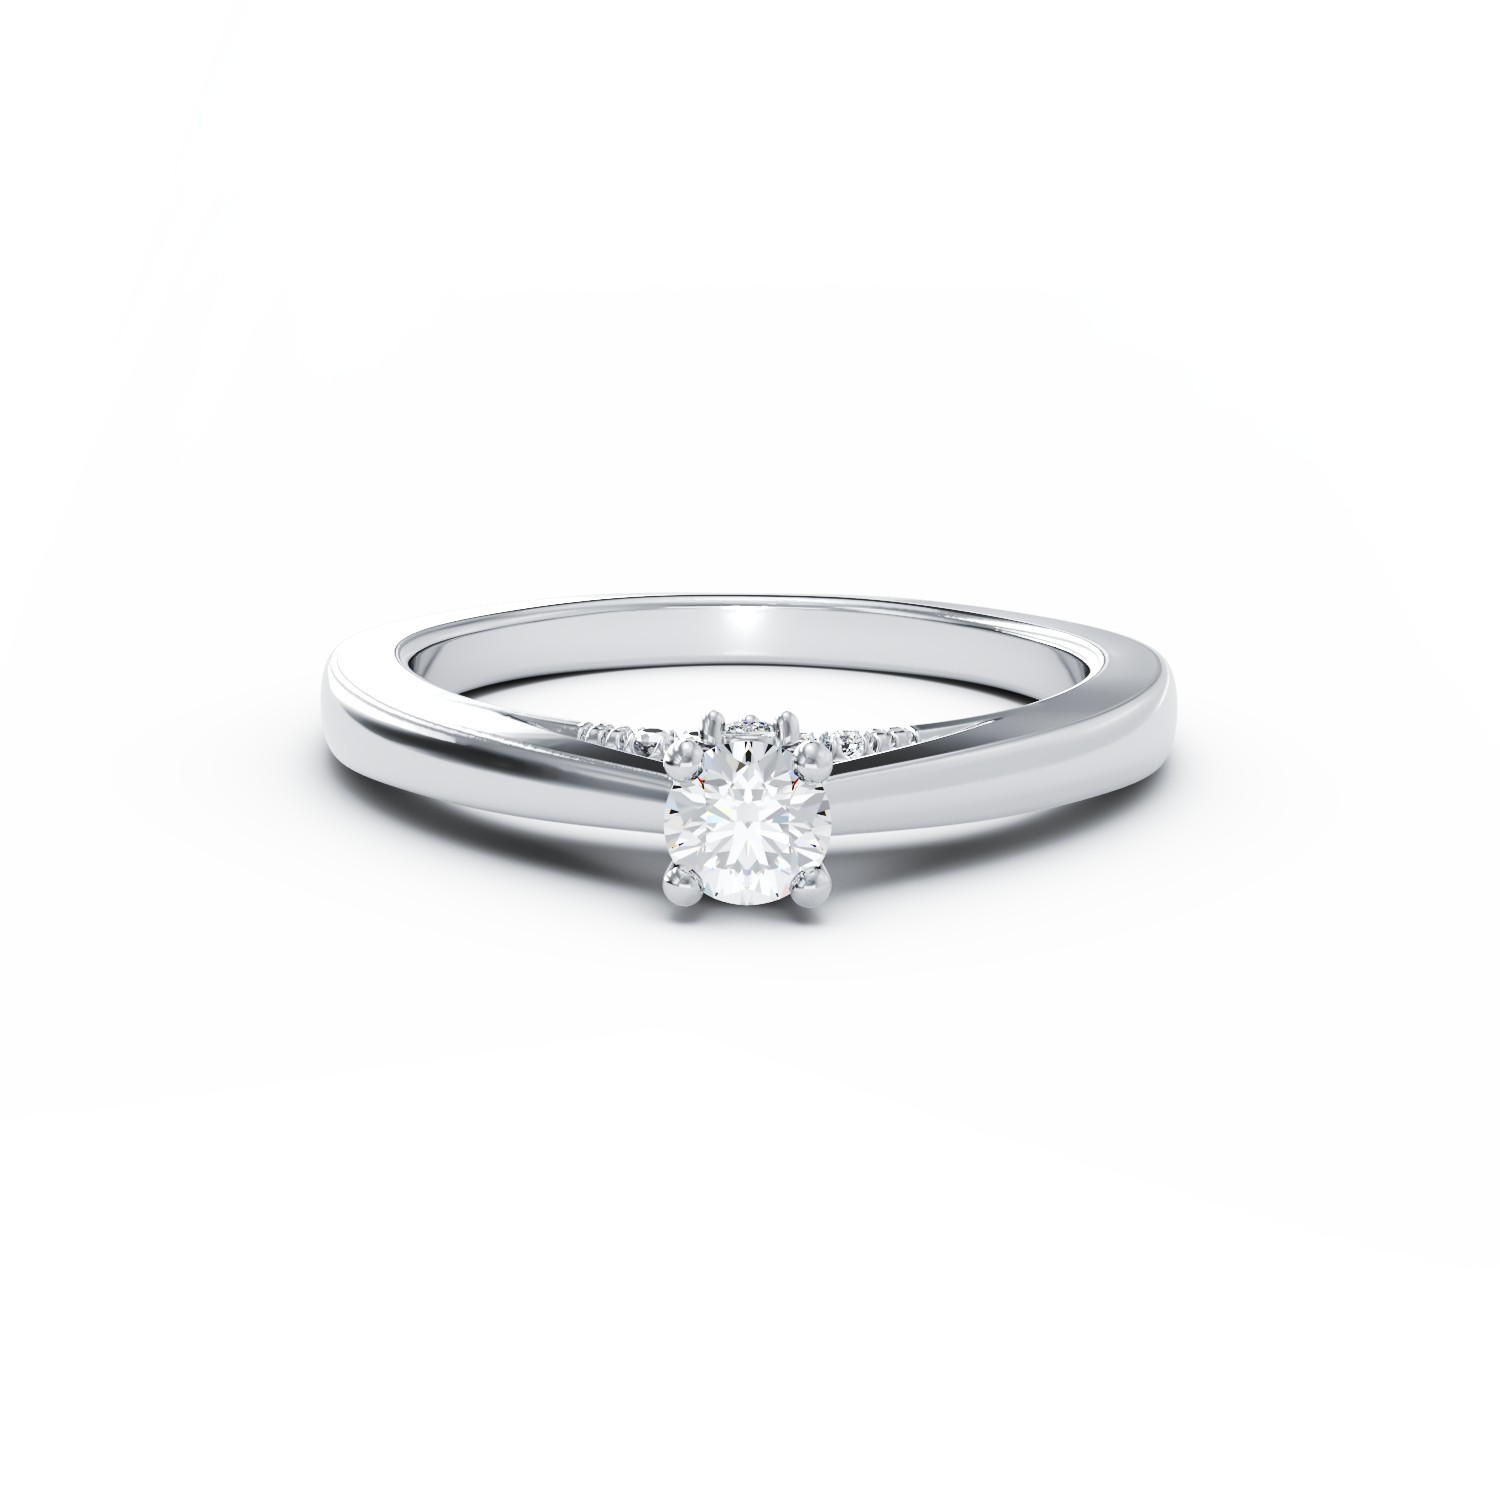 Eljegyzési gyűrű 18K-os fehér aranyból 0,1ct gyémánttal és 0,04ct gyémántokkal. Gramm: 2,48